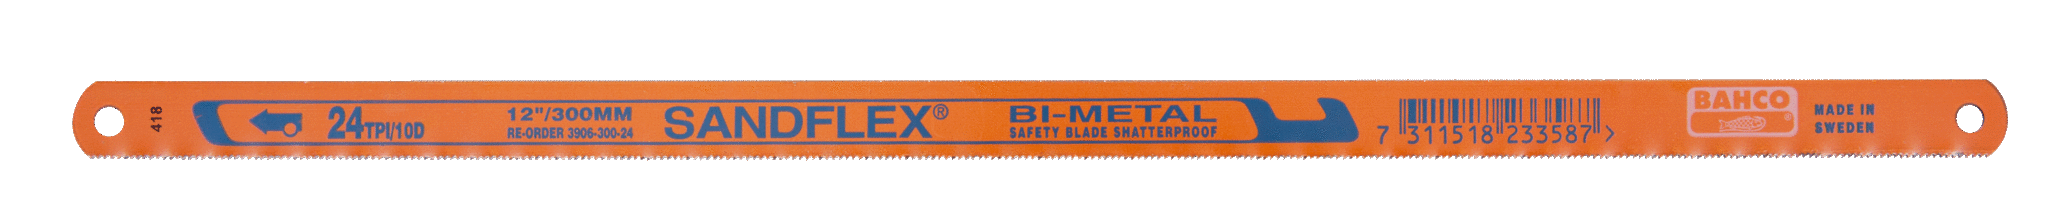 Биметаллические ножовочные полотна SANDFLEX®. Новое биметаллическое полотно SANDFLEX с повышеным содержанием кoбальта BAHCO 3906-300-32-2P